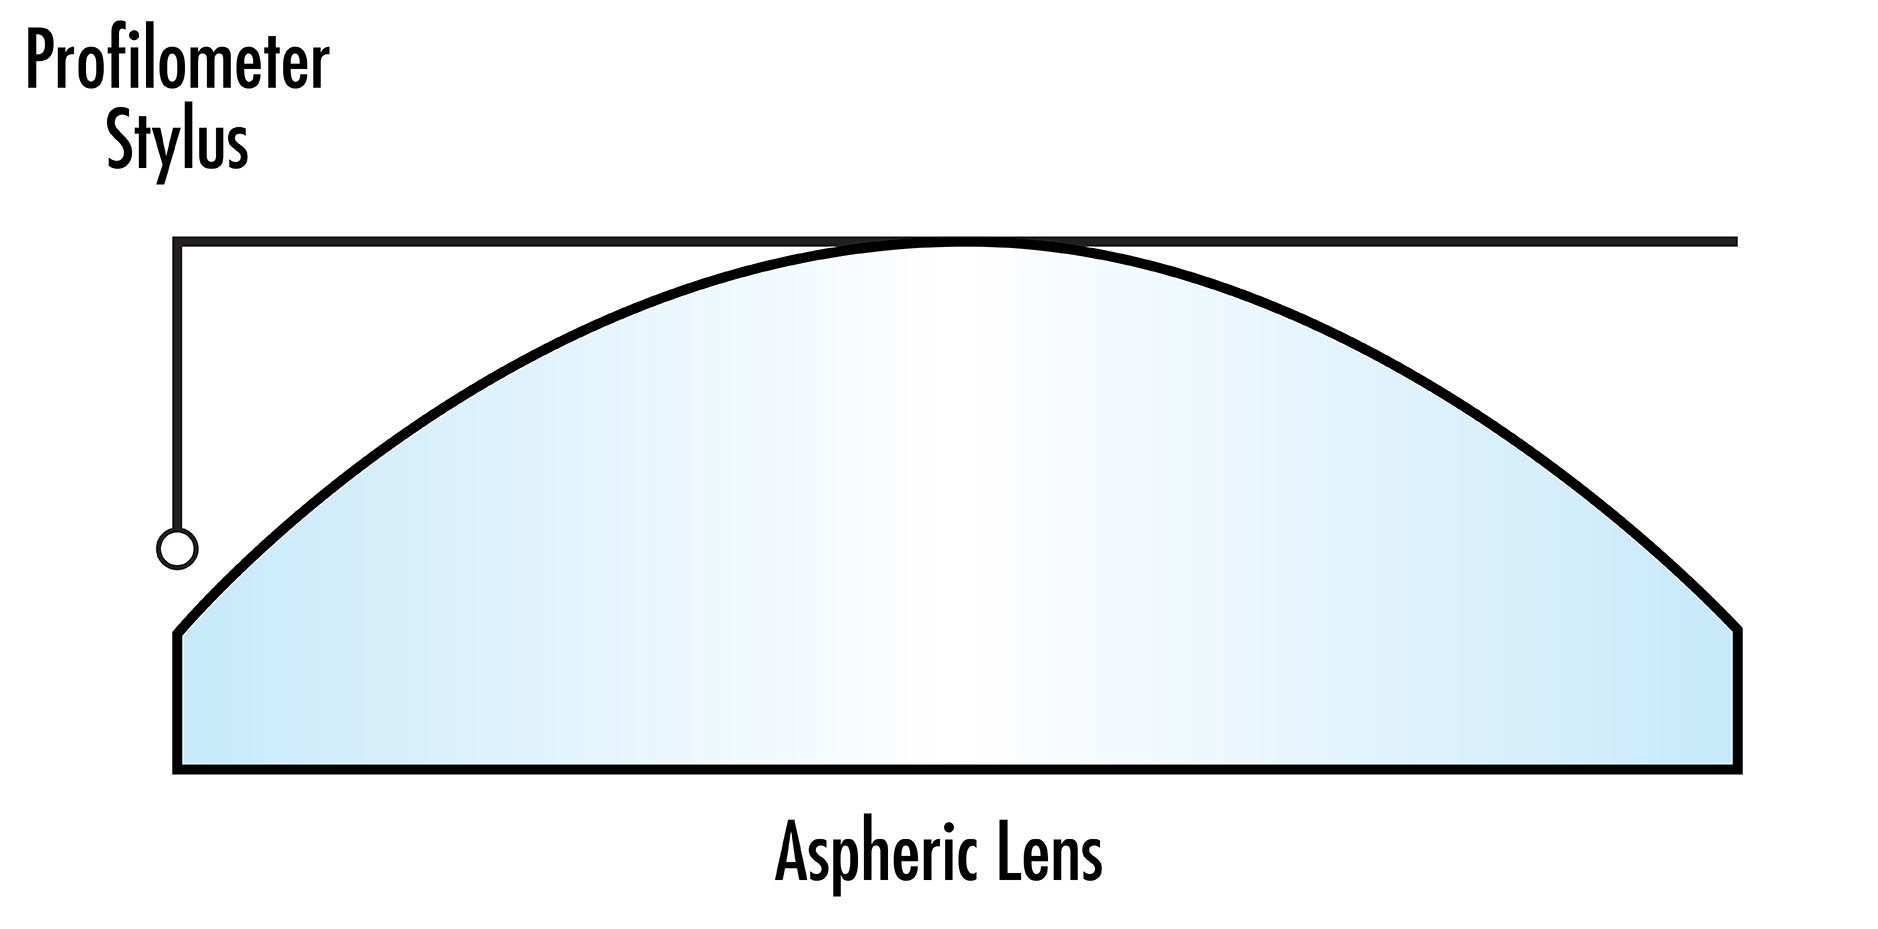 Der Taststift eines taktilen Profilometers, das für die Asphärenmessung verwendet wird, kann die sagittale Höhe begrenzen, die für große Asphären gemessen werden kann.